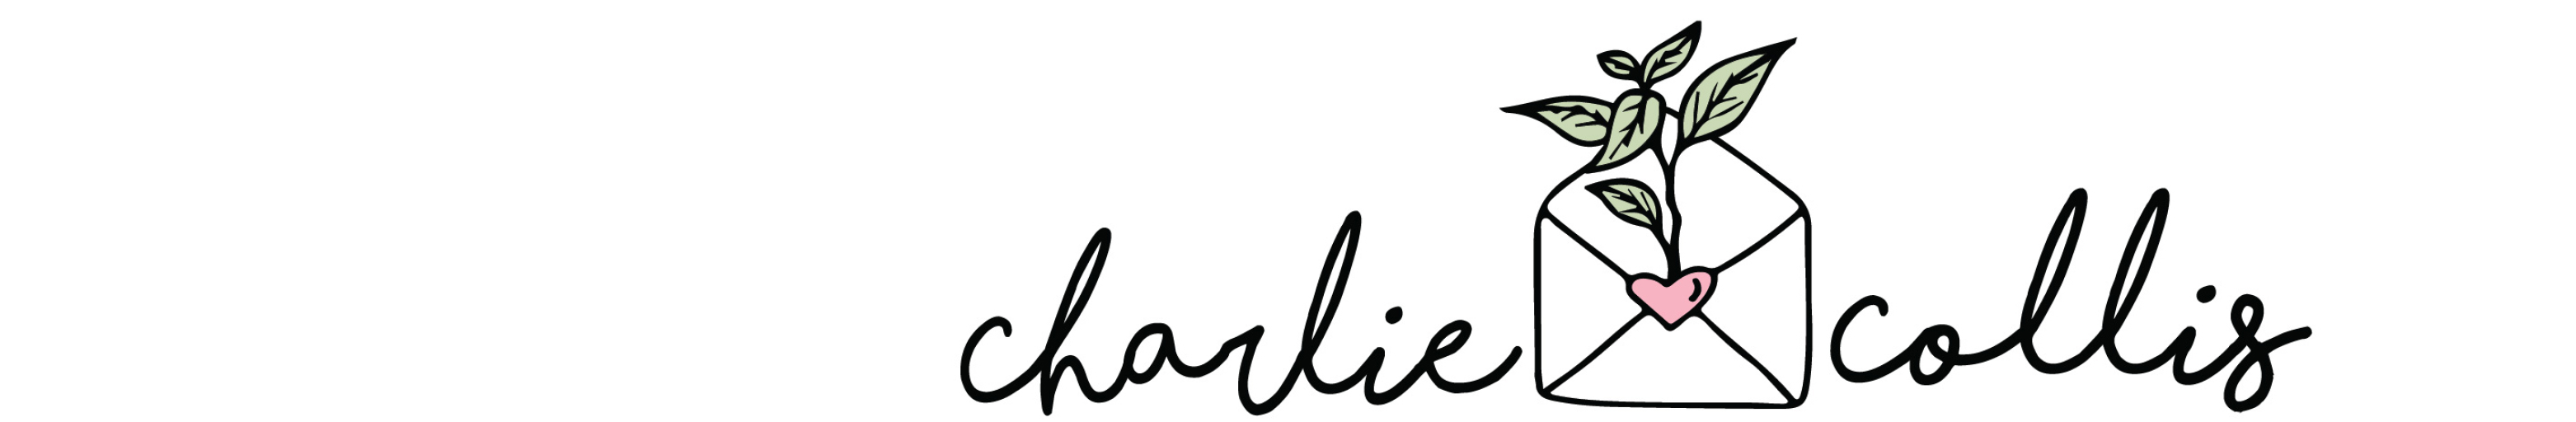 Profilbanneret til Charlie Collis